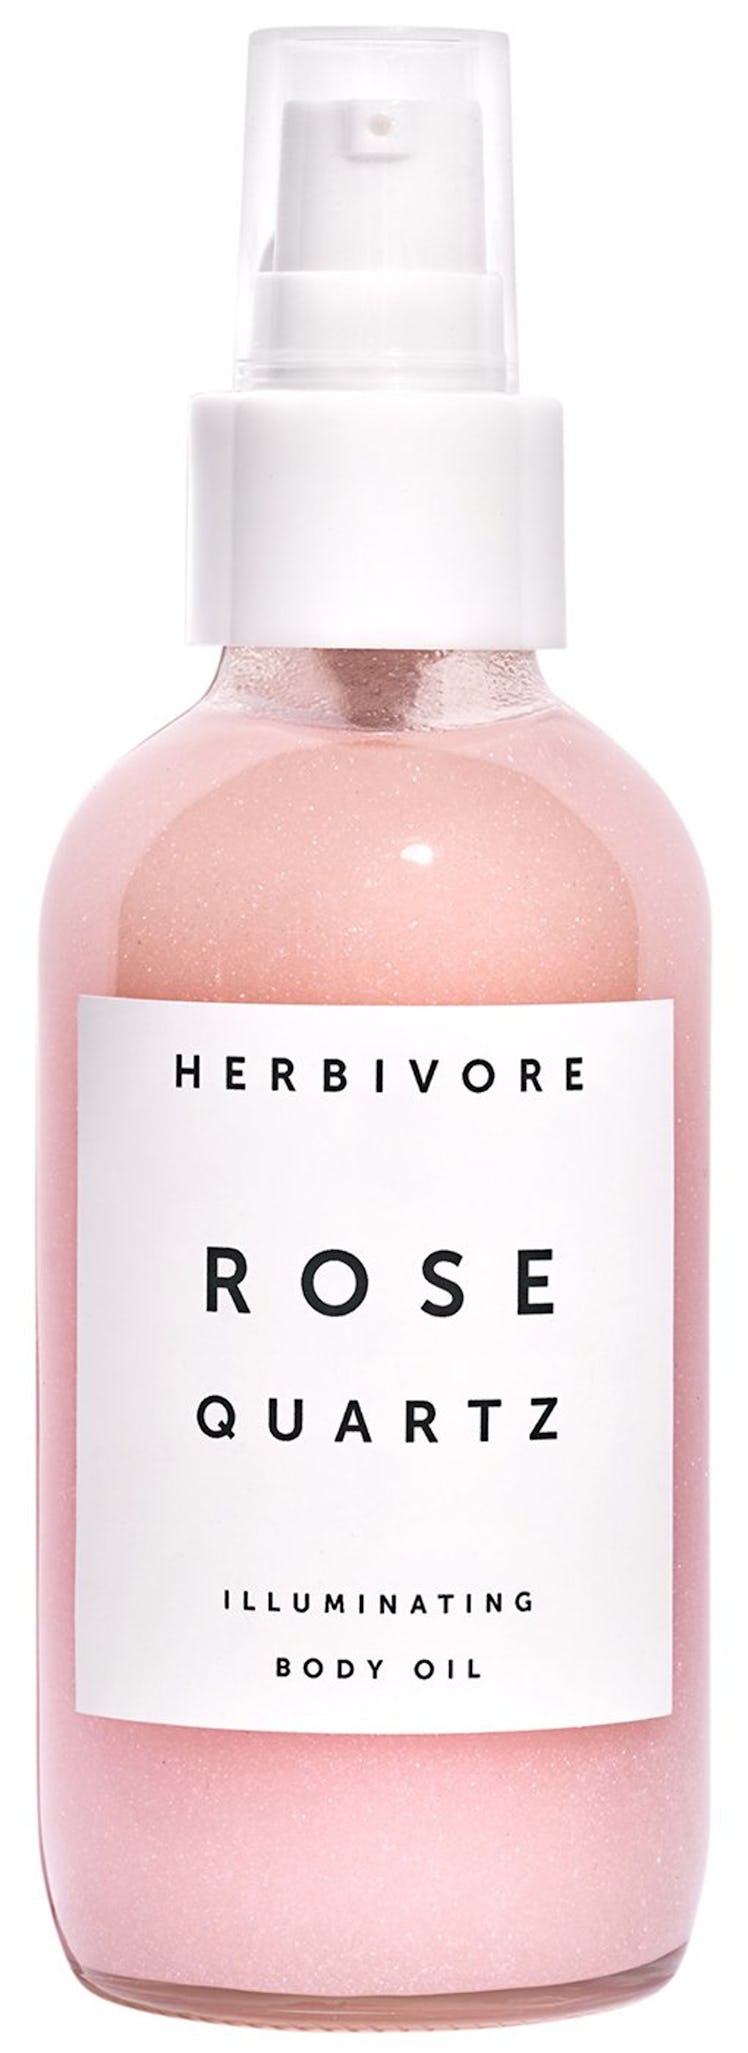 Herbivore Botanicals Natural Rose Quartz Illuminating Body Oil